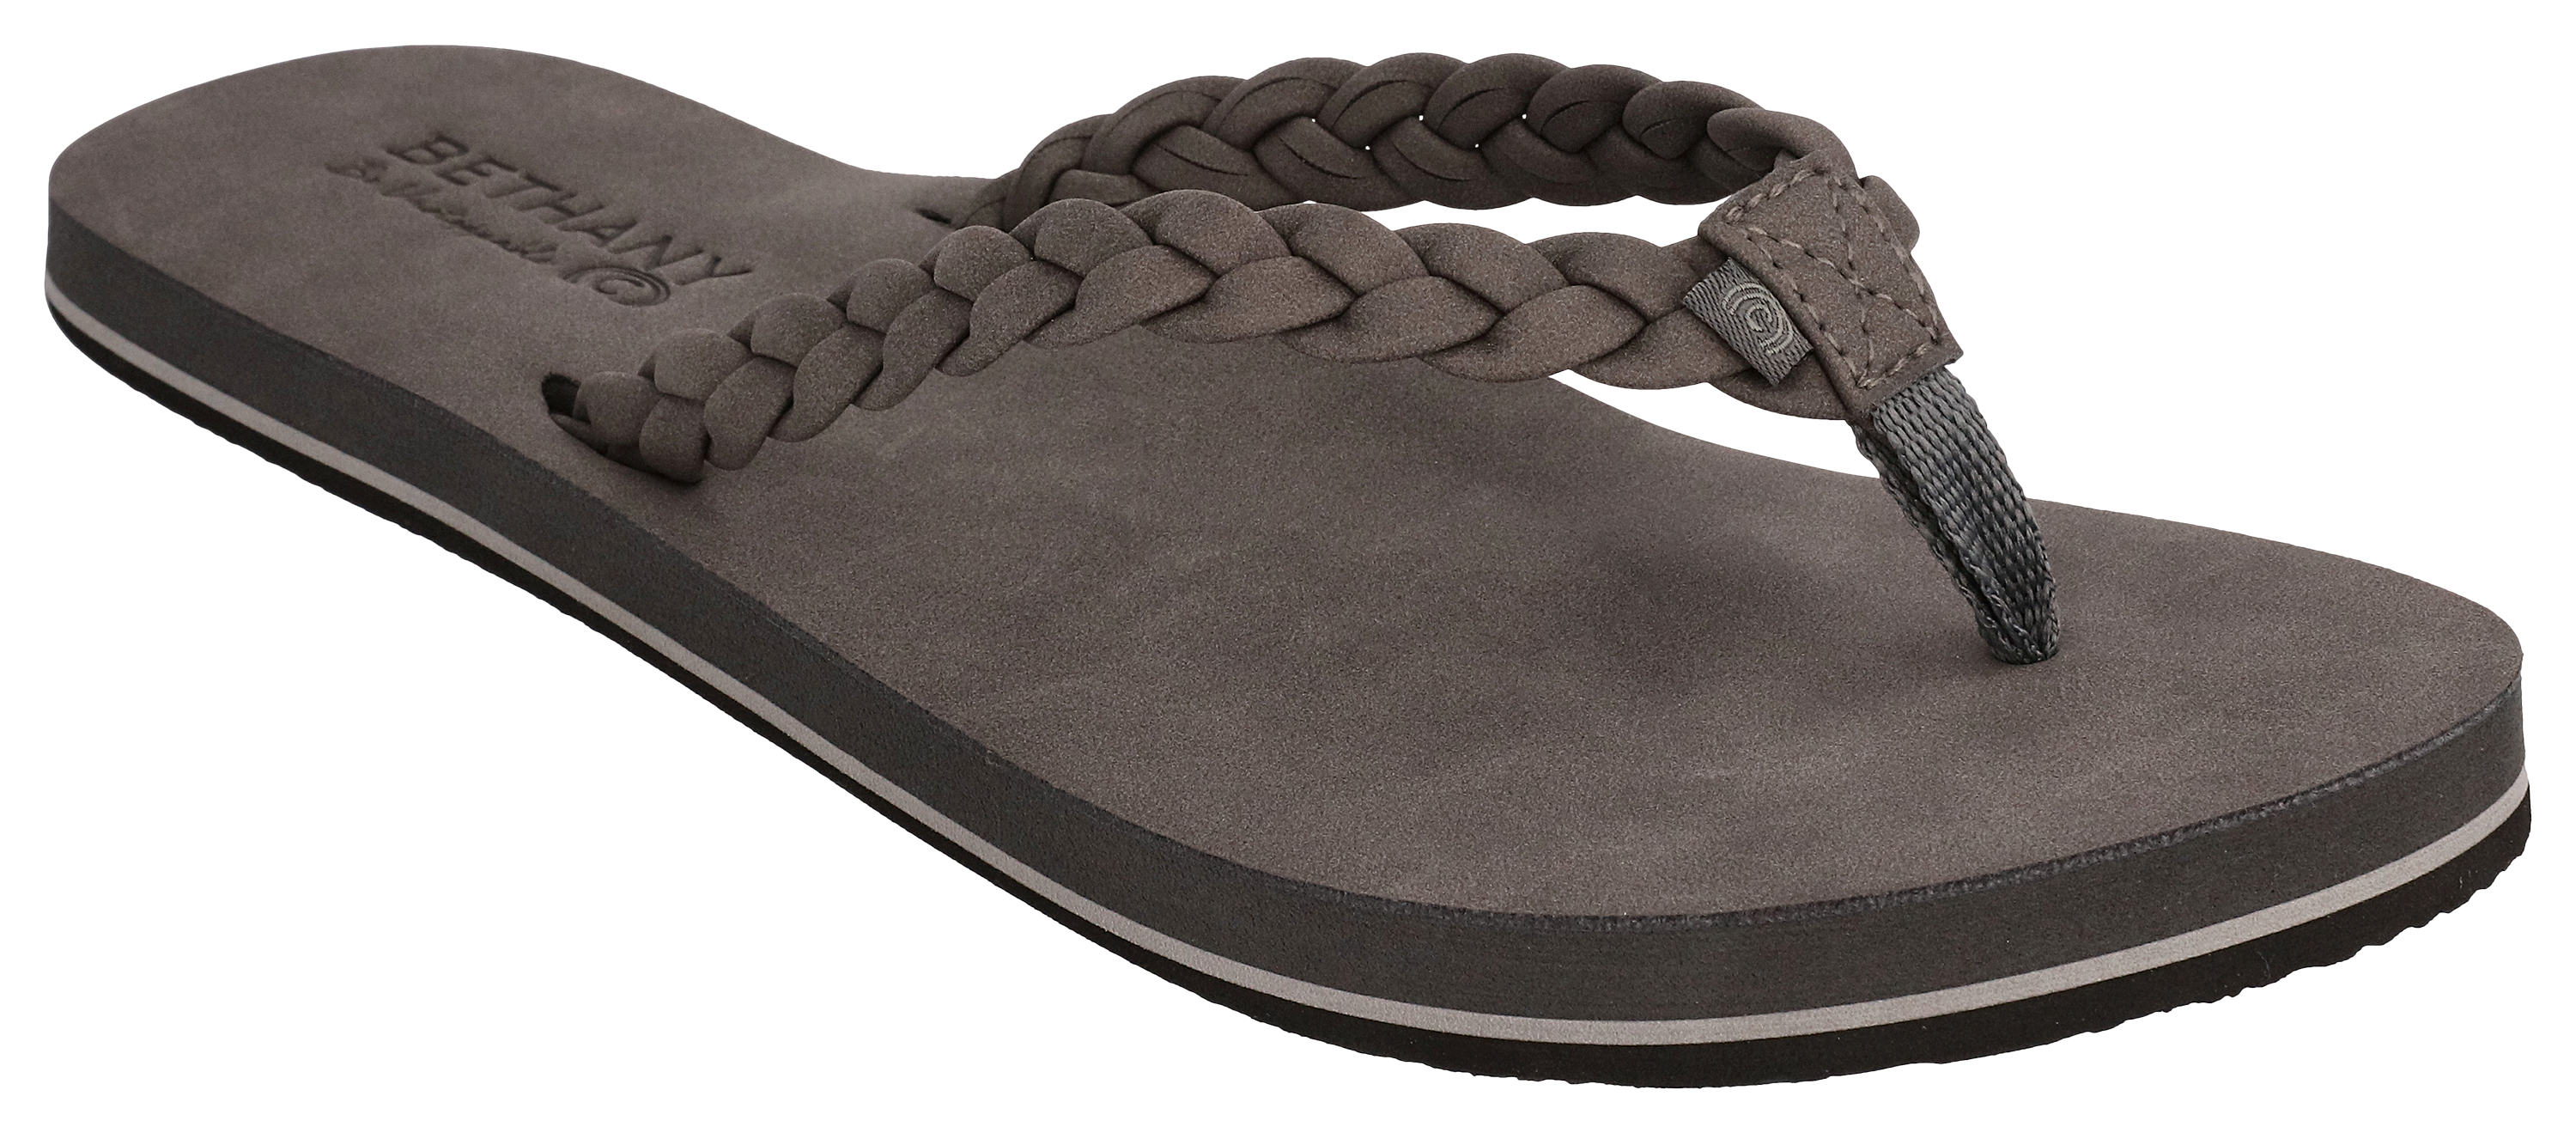 Cobian Sumo Terra Sandals for Men